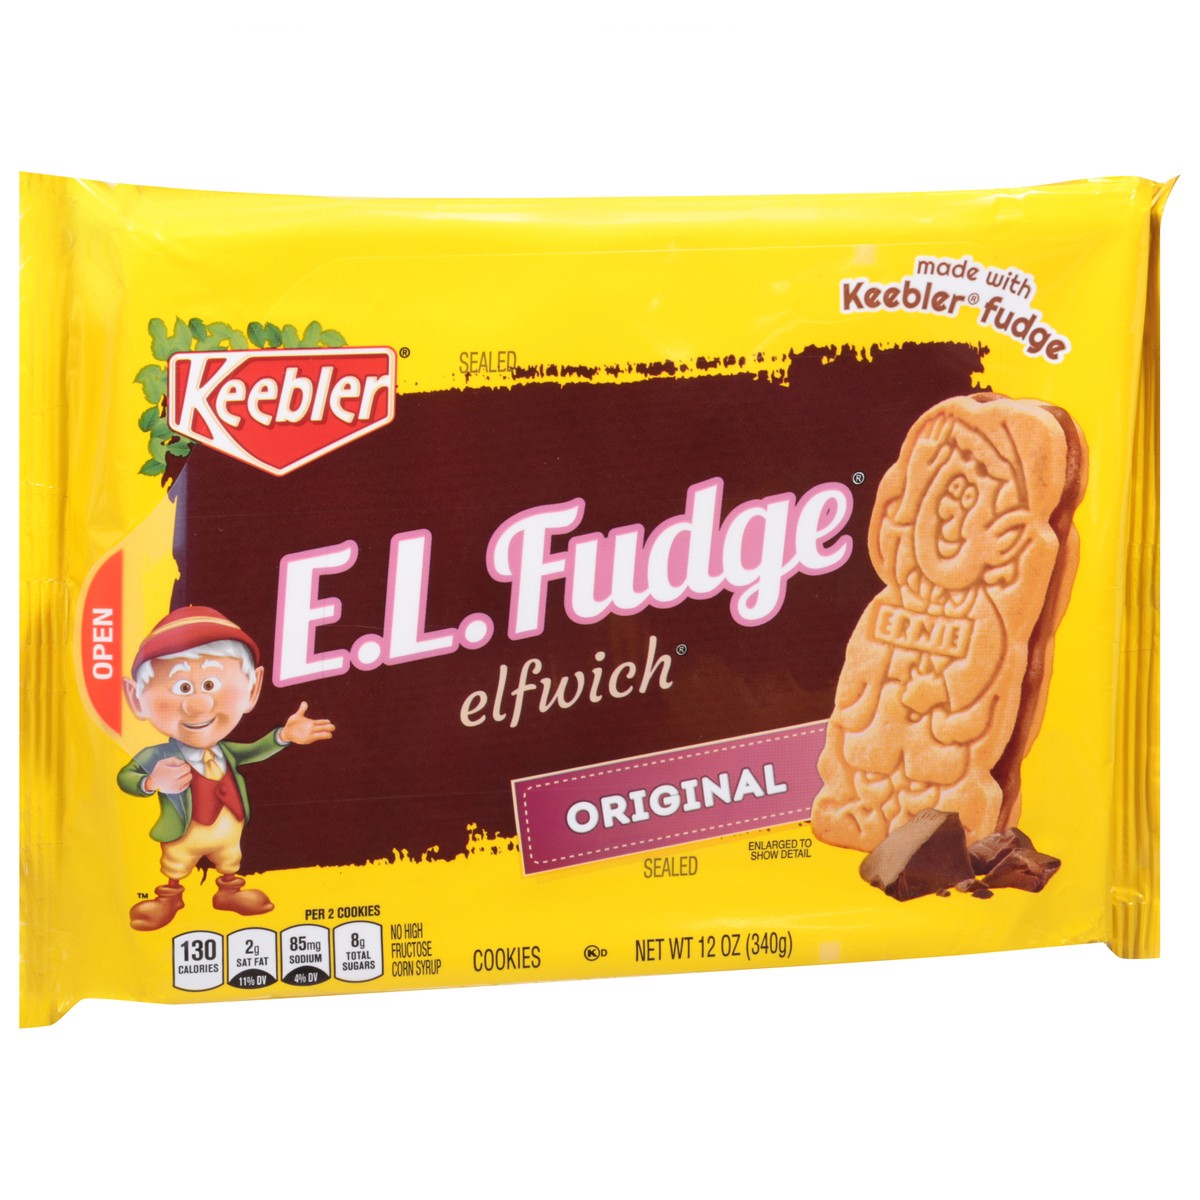 slide 6 of 11, Keebler E.L.Fudge Elfwich Cookies, Original, 13.6 oz